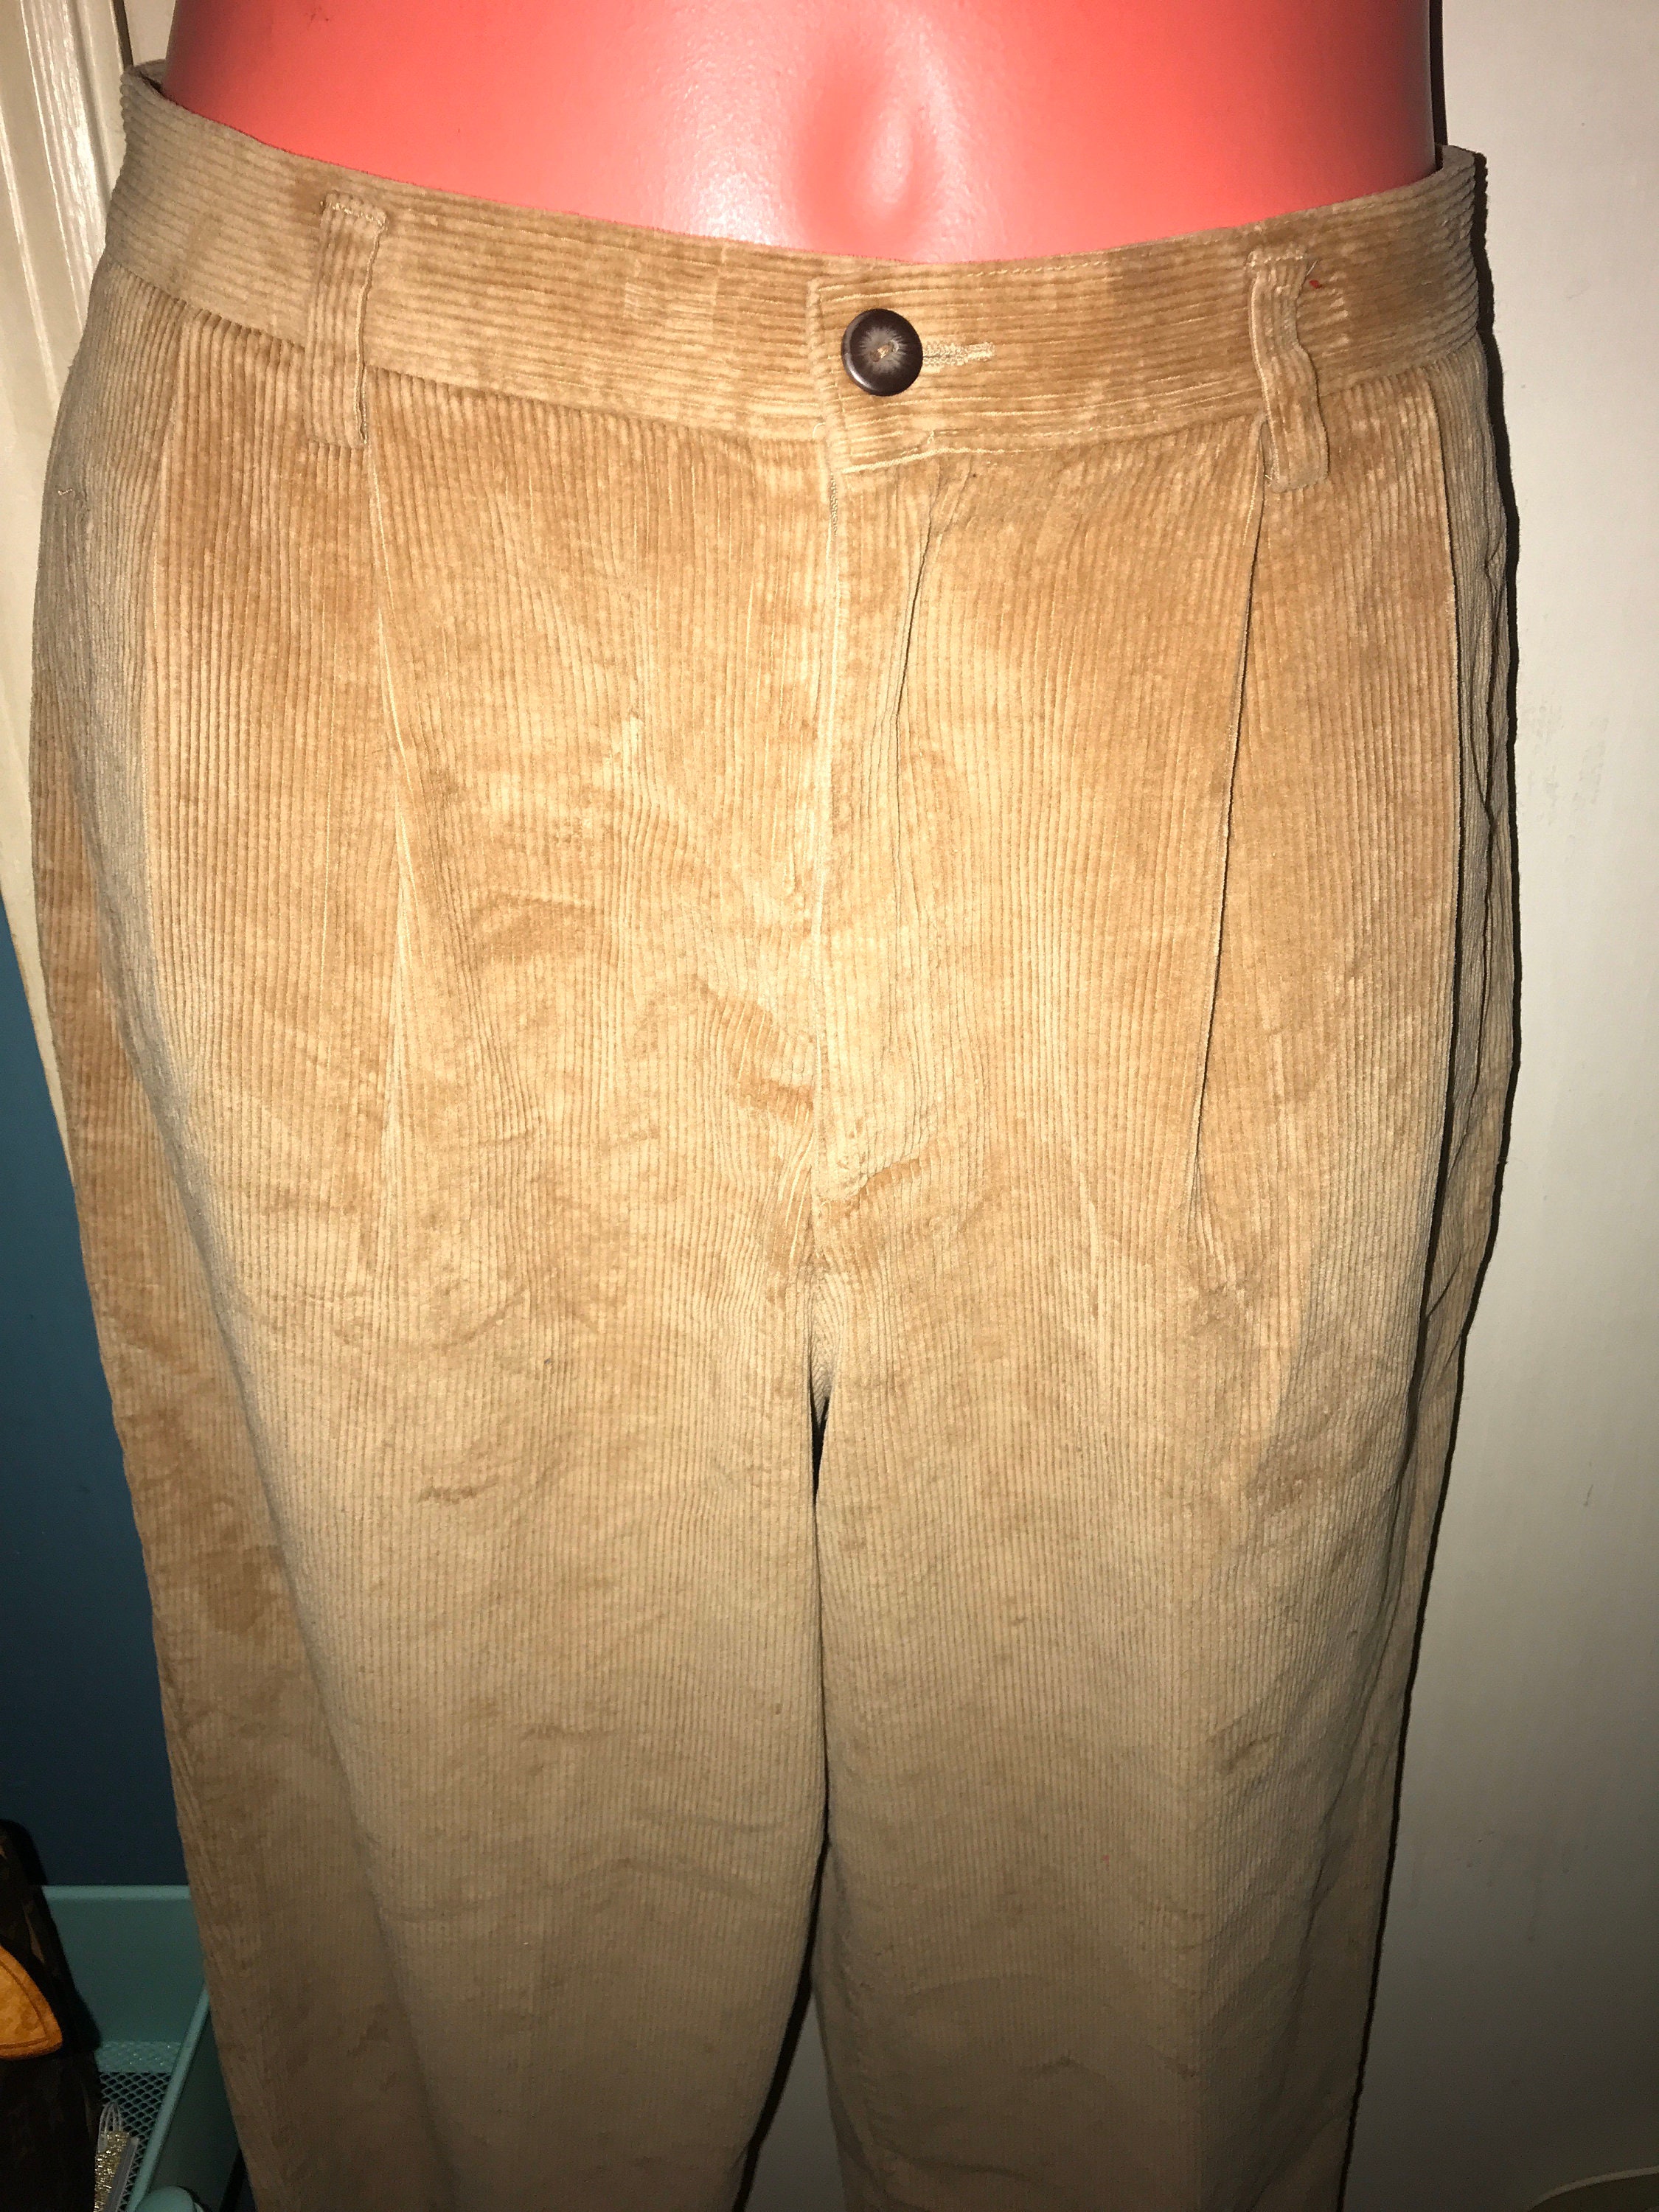 Vintage Liz Claiborne Brown Corduroy Pants . Tan Corduroy Pants ...